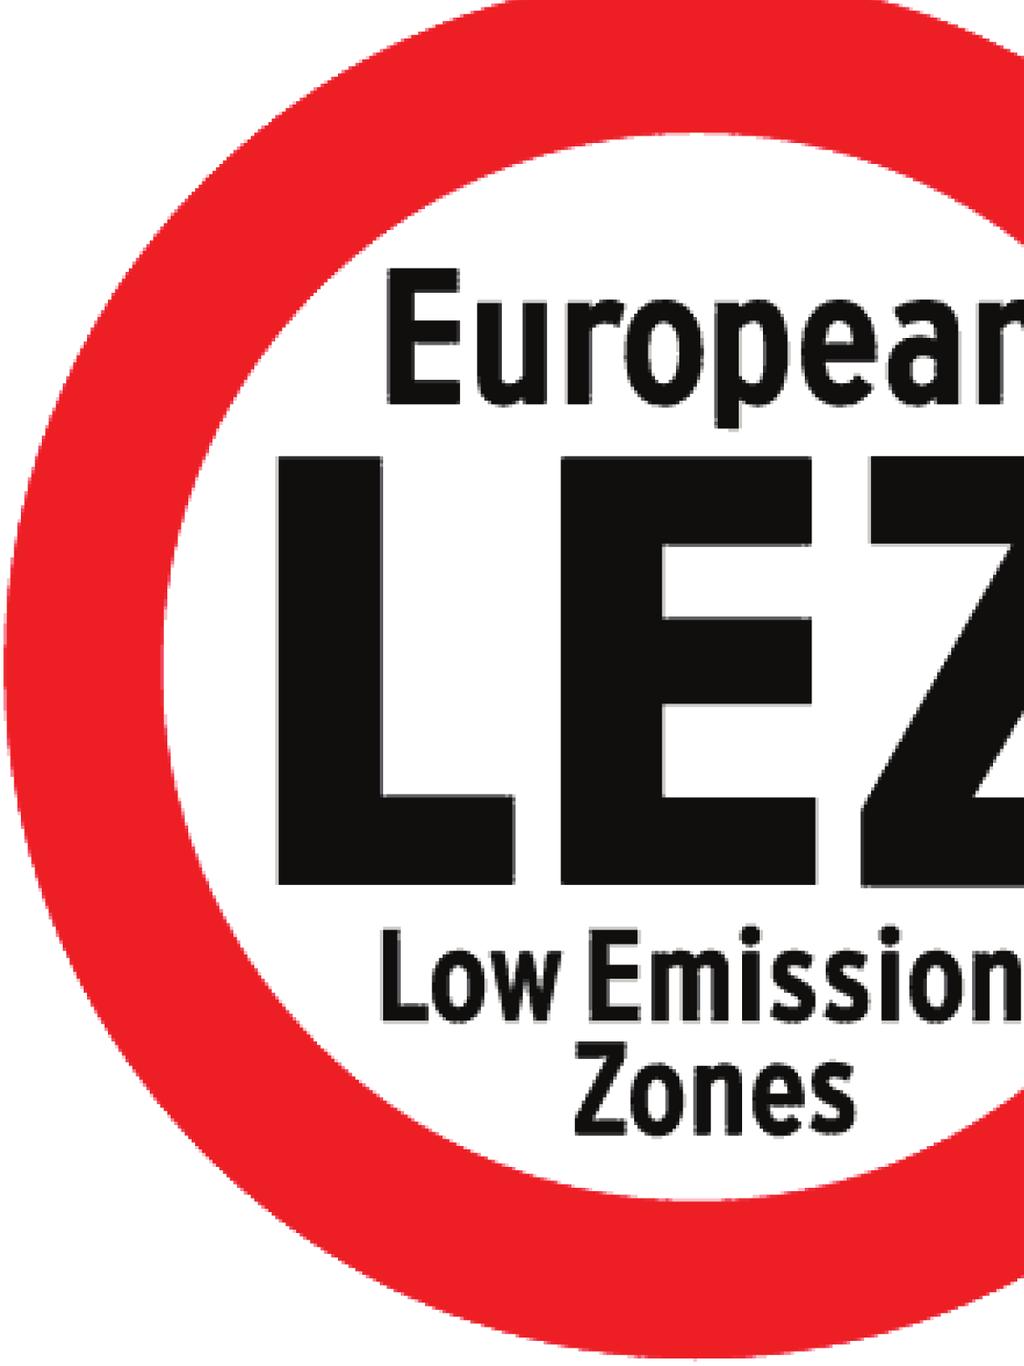 Primul buletin LEEZEN a apărut pe 11 octombrie 2010 Nou: Puteţi avea acces la toate înregistrările LEZ direct de pe acest site, şi veţi primi informaţiile pe fiecare oraş, ţară sau regiune.